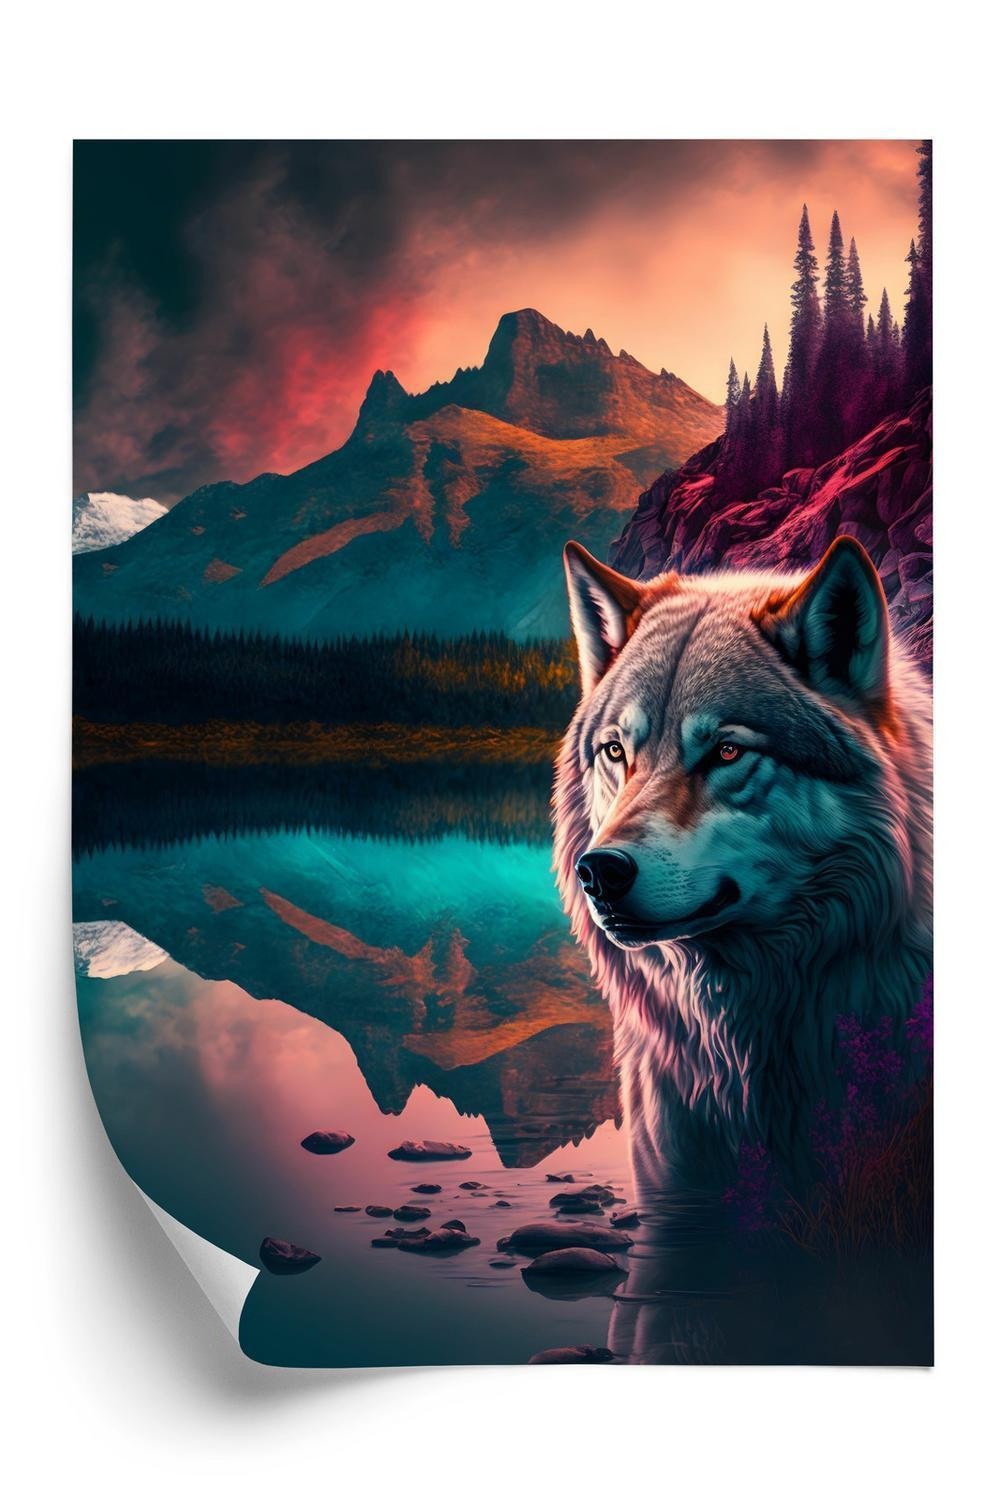 Plakat - Majestætisk ulv oplyst med levende farverigt lys i bjergene